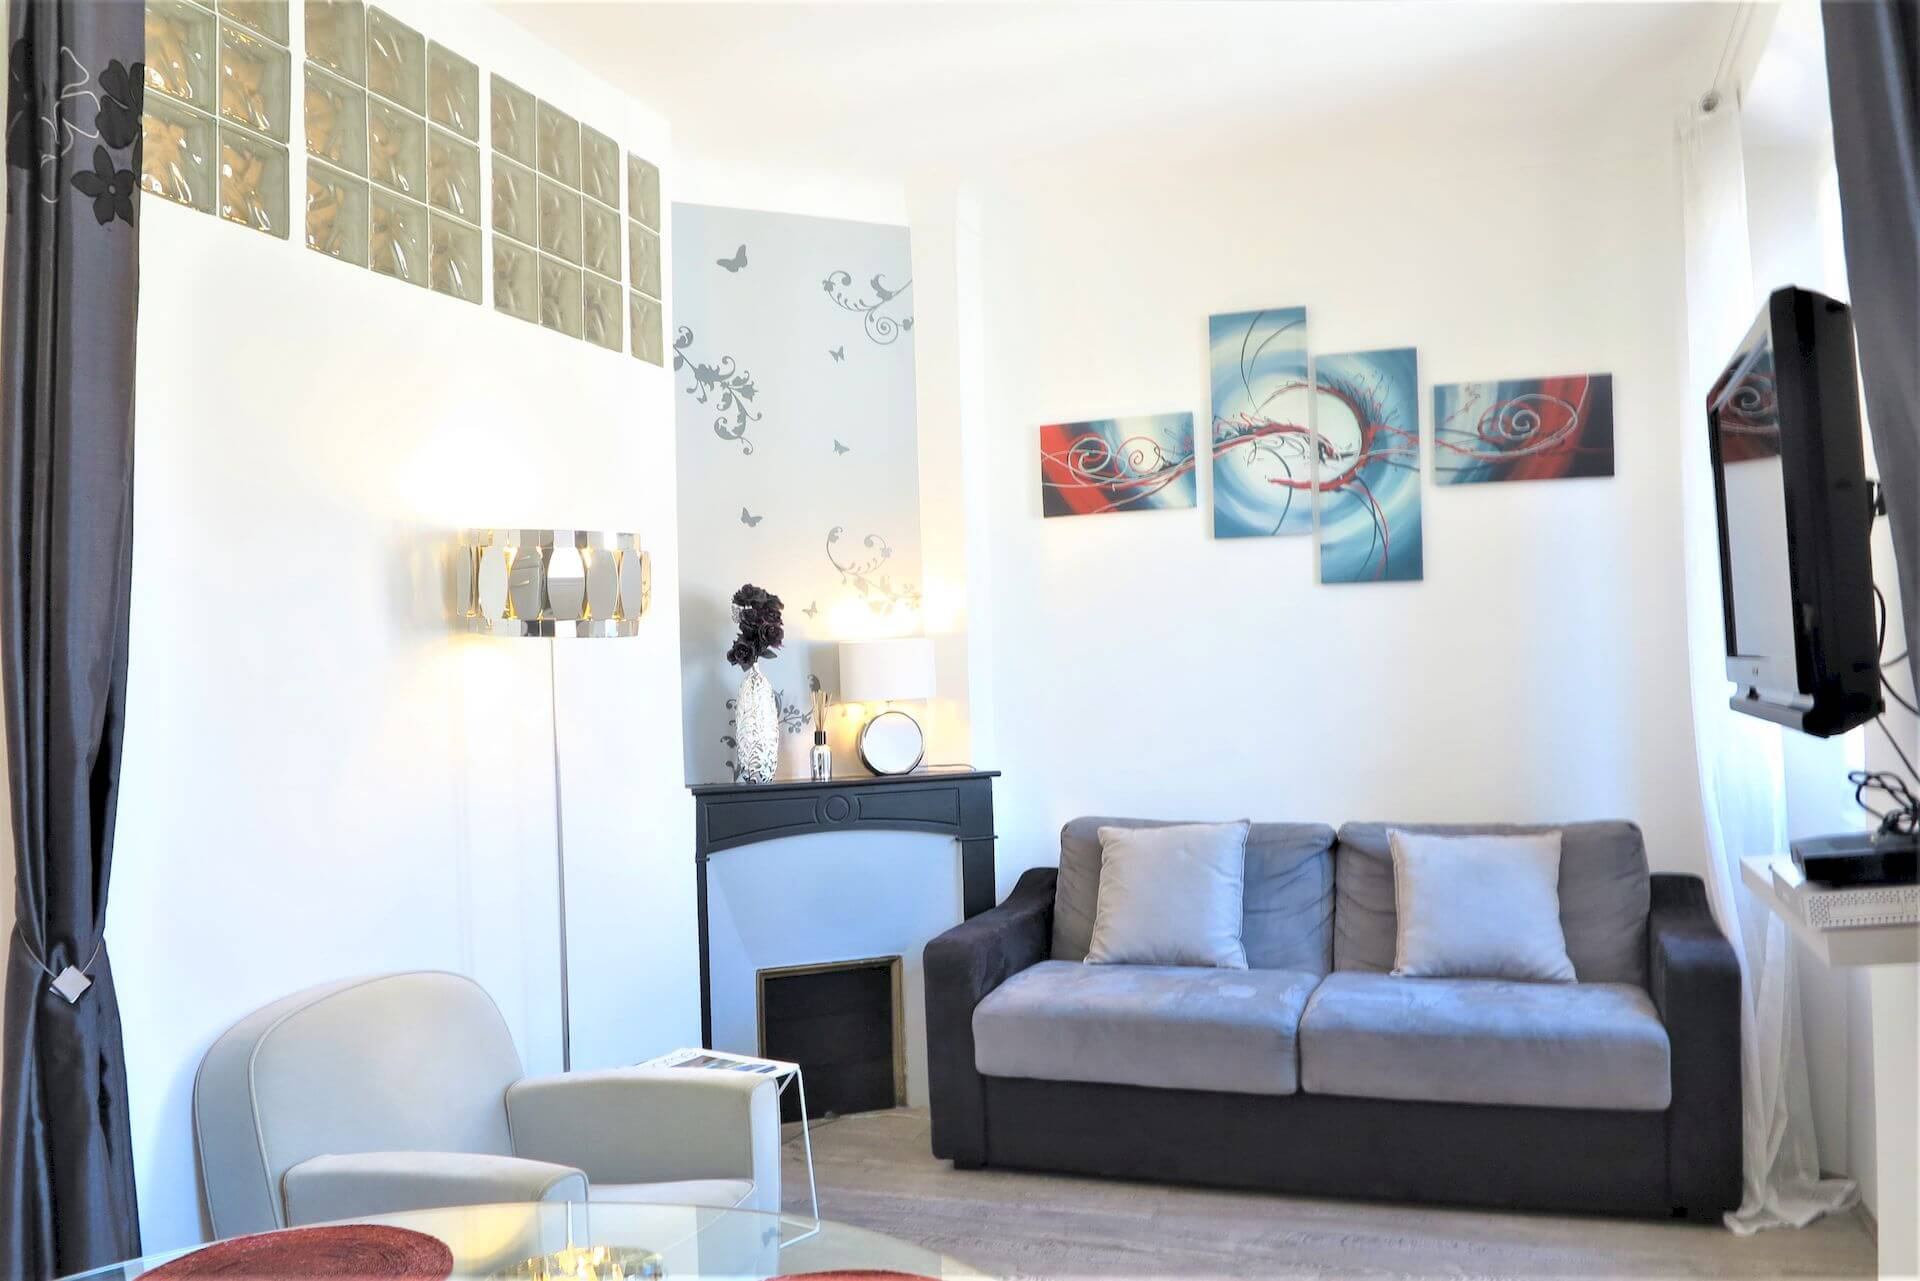 Affitto-Stagionale-appartamenti-attività-Cannes